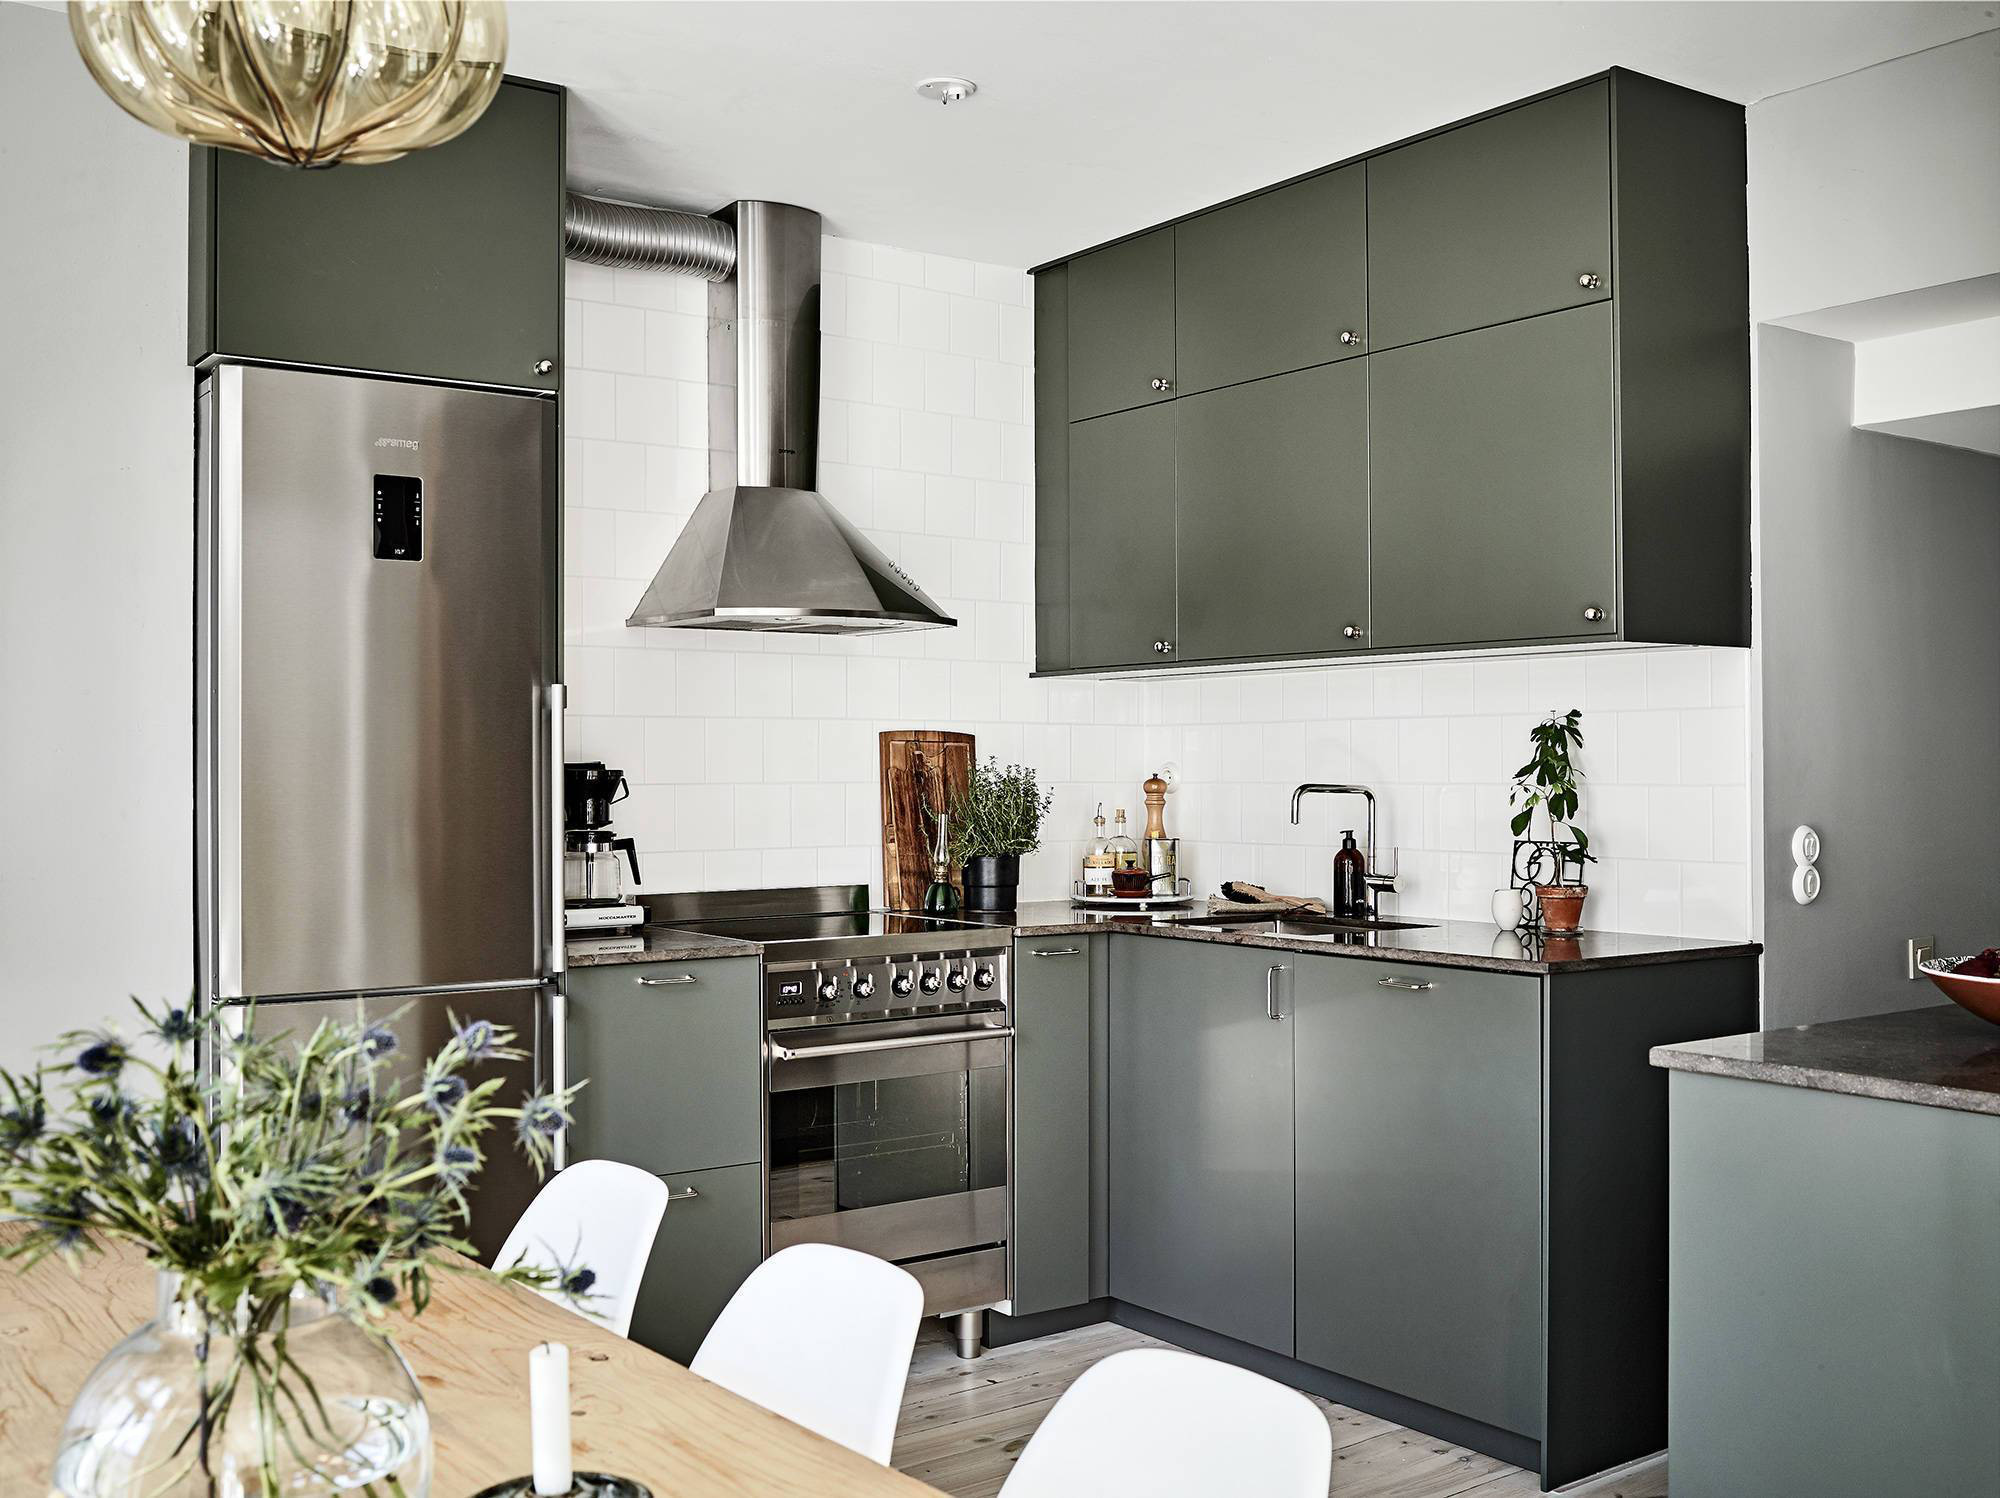  Hệ thống tủ lưu trữ ẩn trong nhà bếp với sắc màu xanh bàng bạc khiến không gian thêm phần nổi bật.